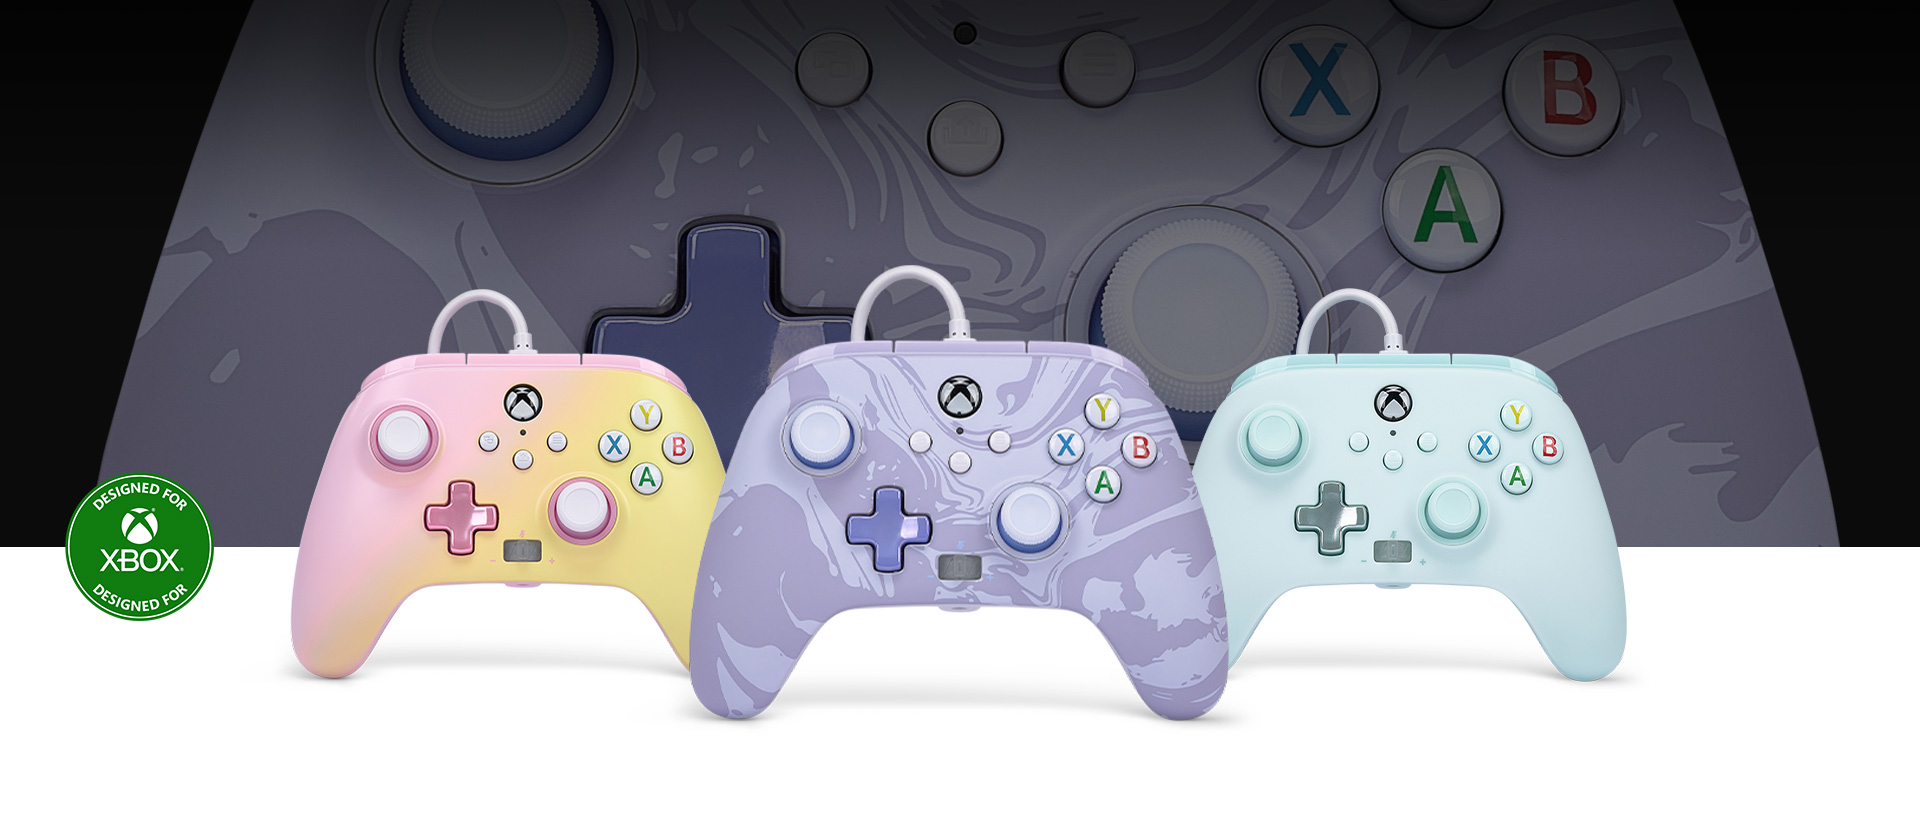 Logotipo Diseñado para Xbox, mando de remolinos púrpura delante de un mando de color limonada rosa y sueños en pastel a lado